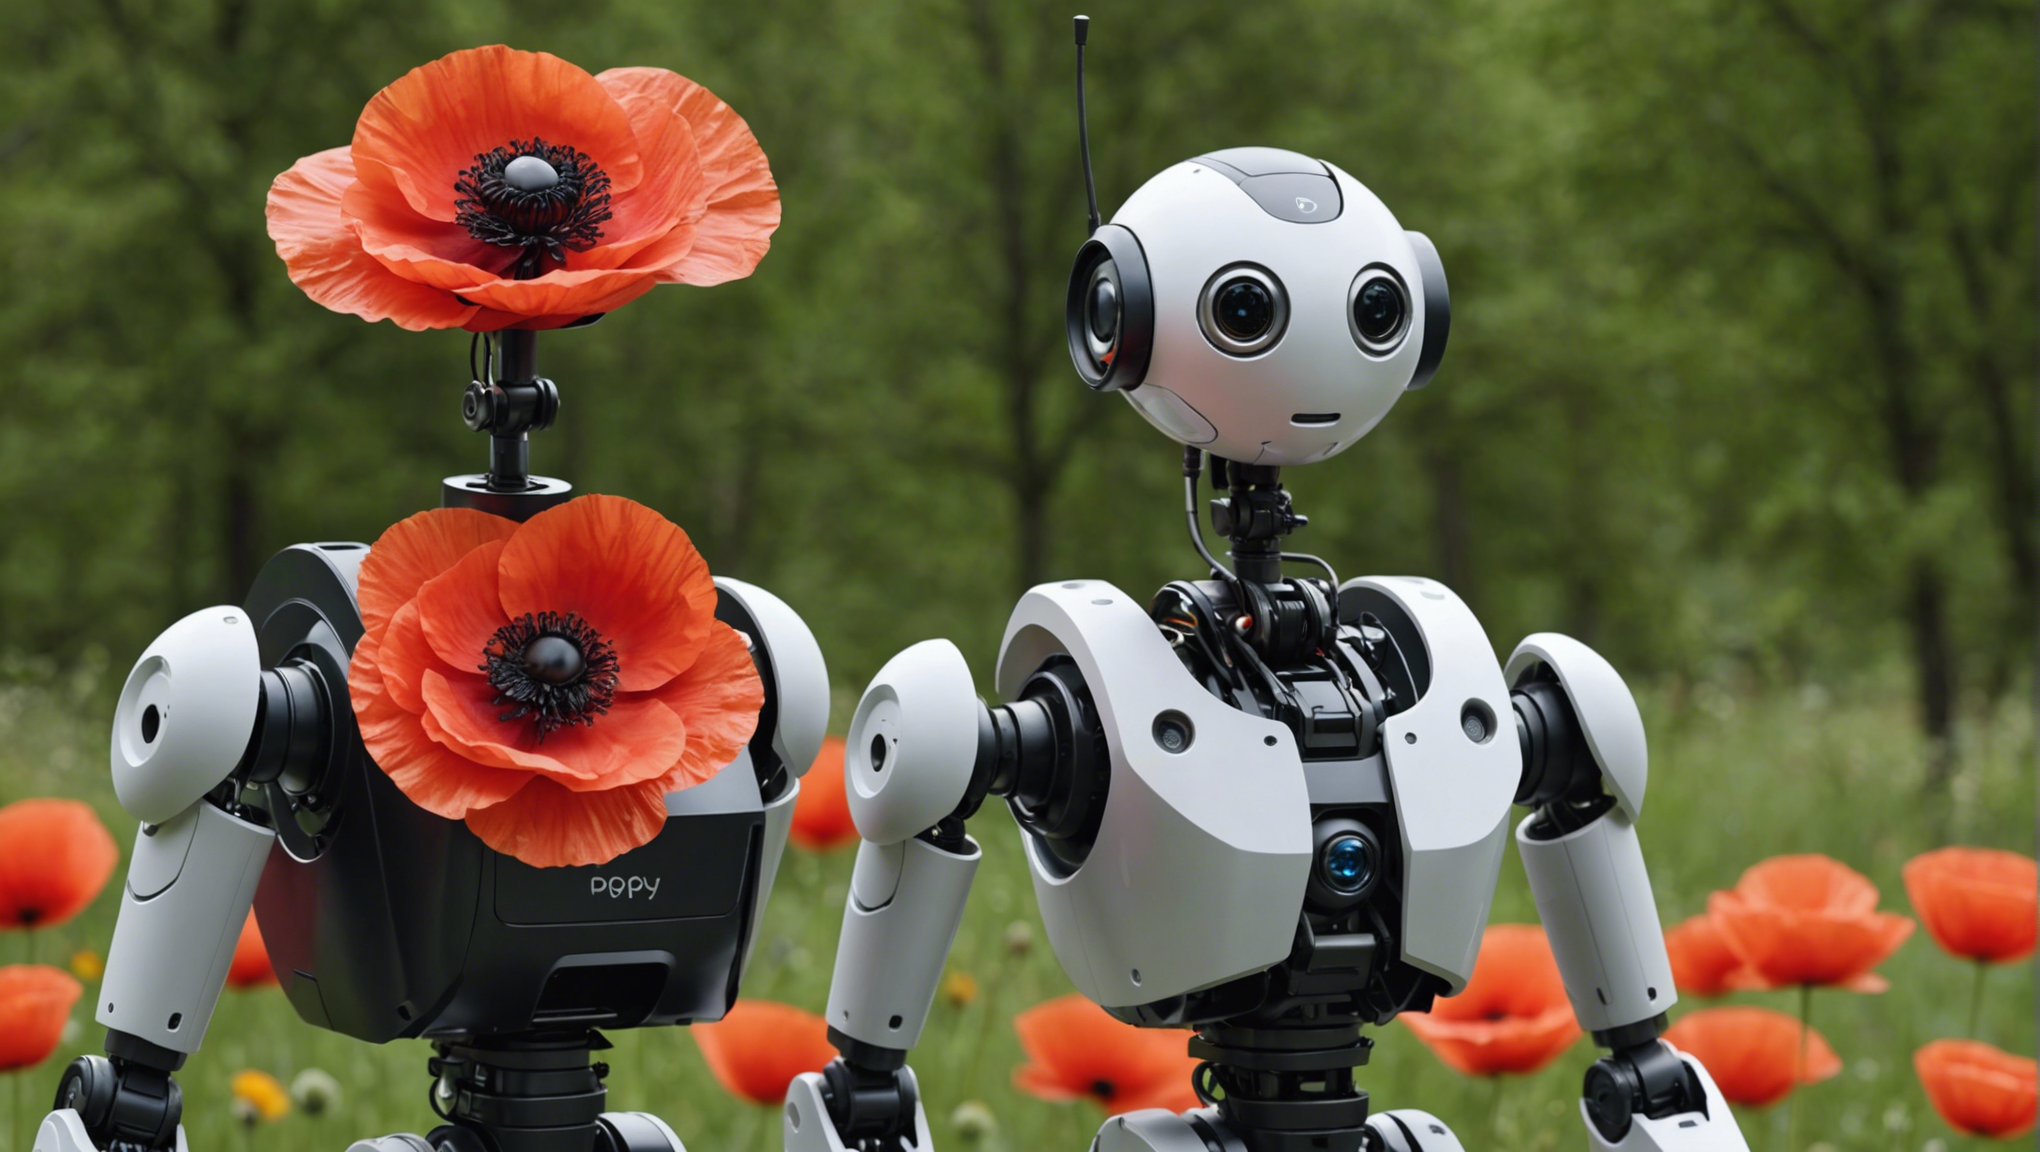 découvrez comment commencer facilement avec les robots poppy humanoid et poppy torso et initiez-vous à la robotique humanoïde.